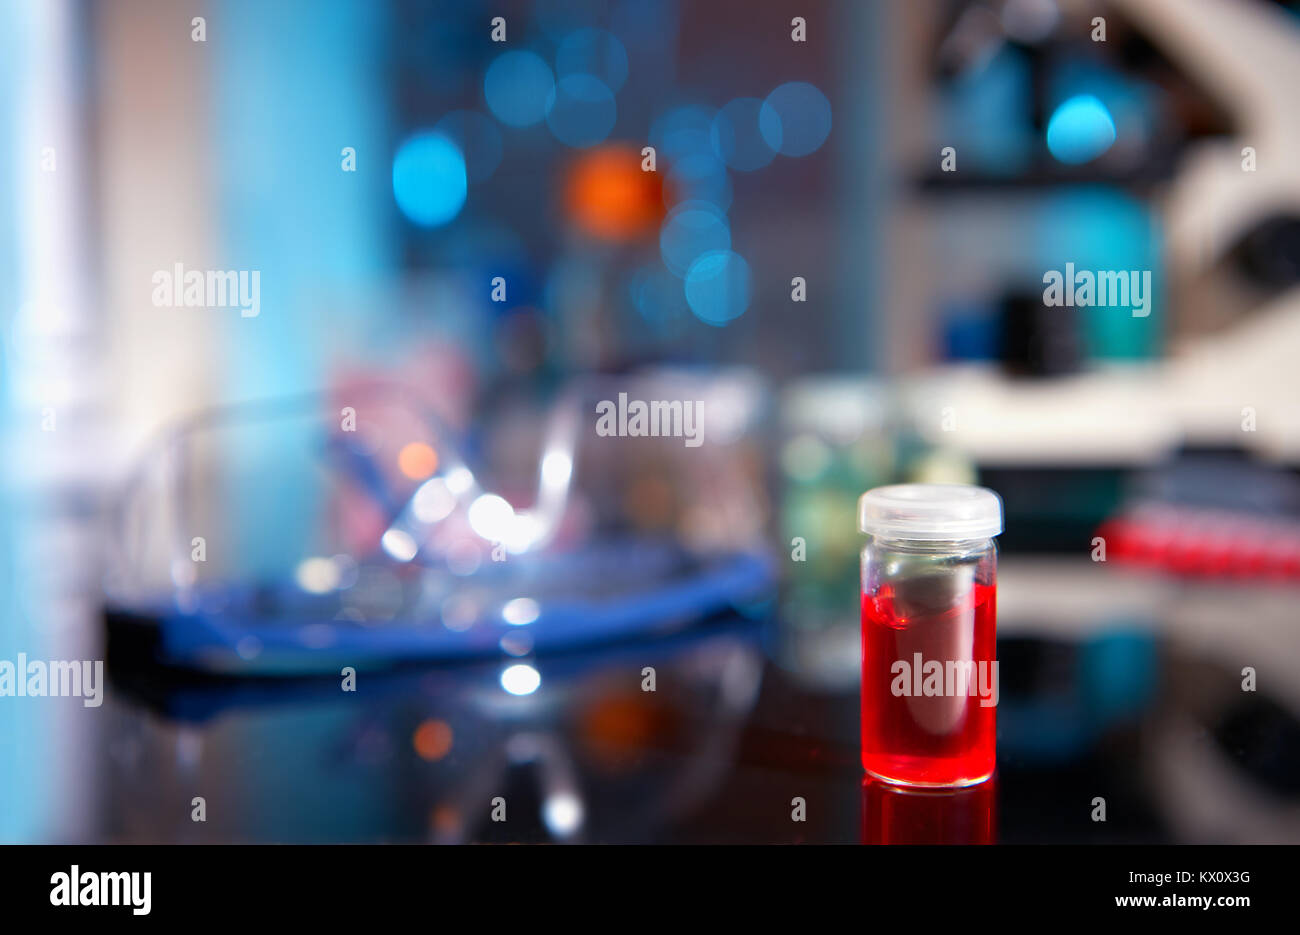 Red campione liquido nella fiala di plastica su un tavolo in laboratorio biologico, shallow DOF, focus sulla fiala Foto Stock